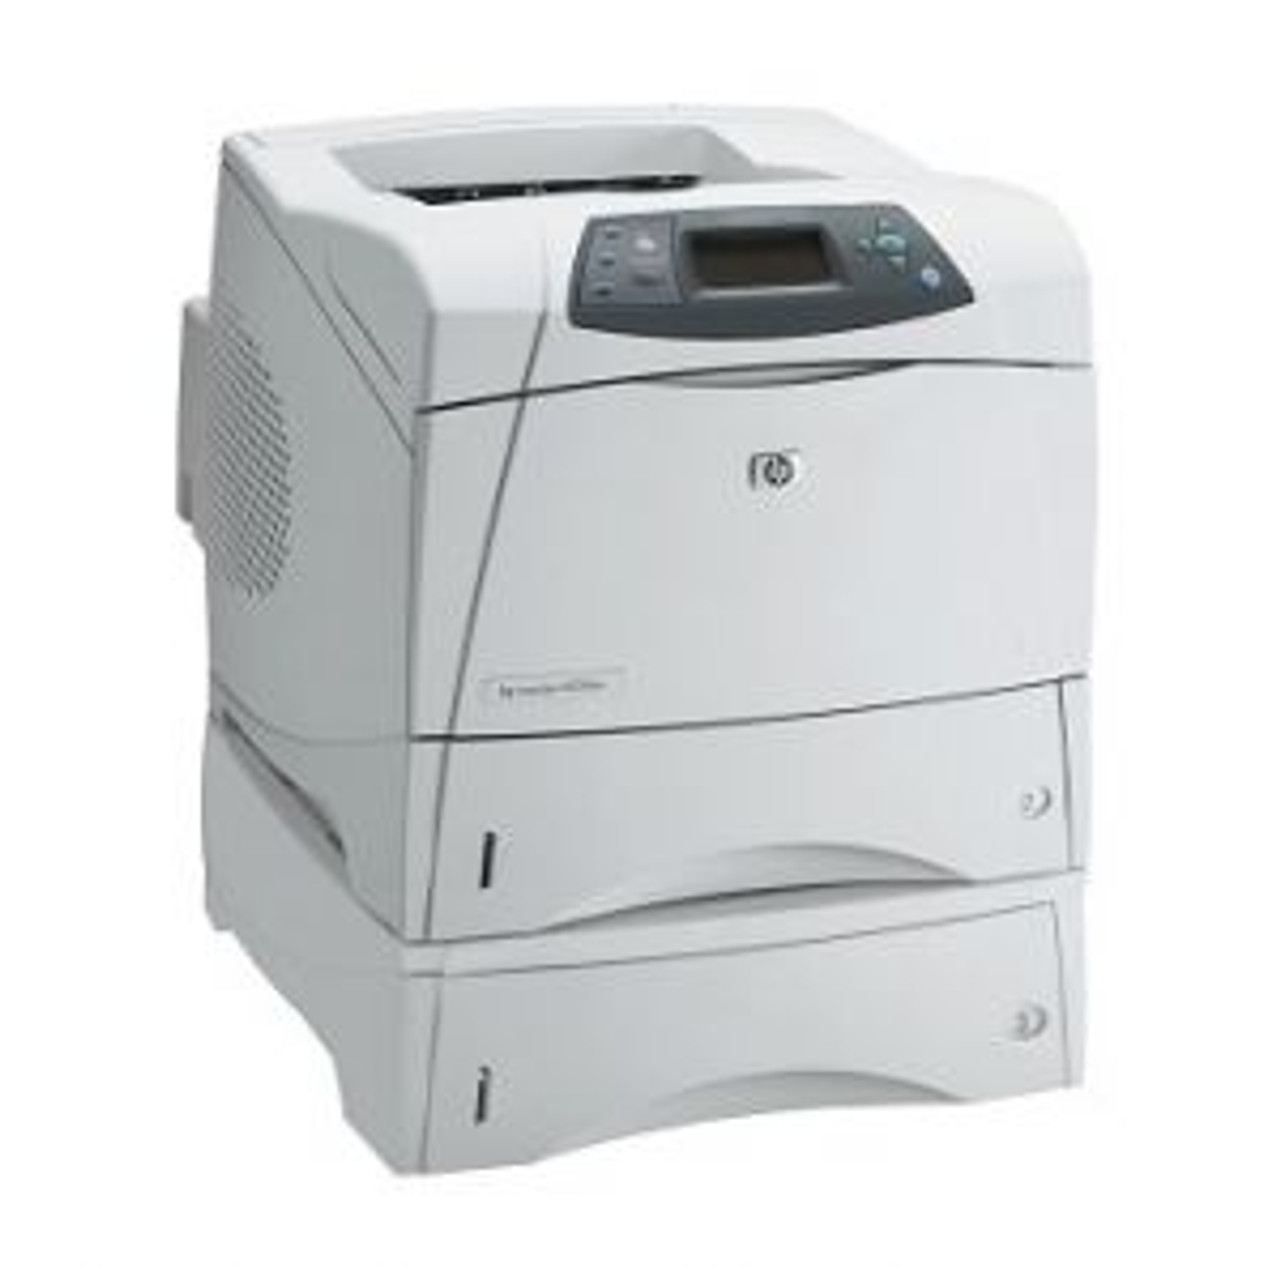 Printers & Cartridges,Printer Accessories,Duplexer,HP,Q2428A